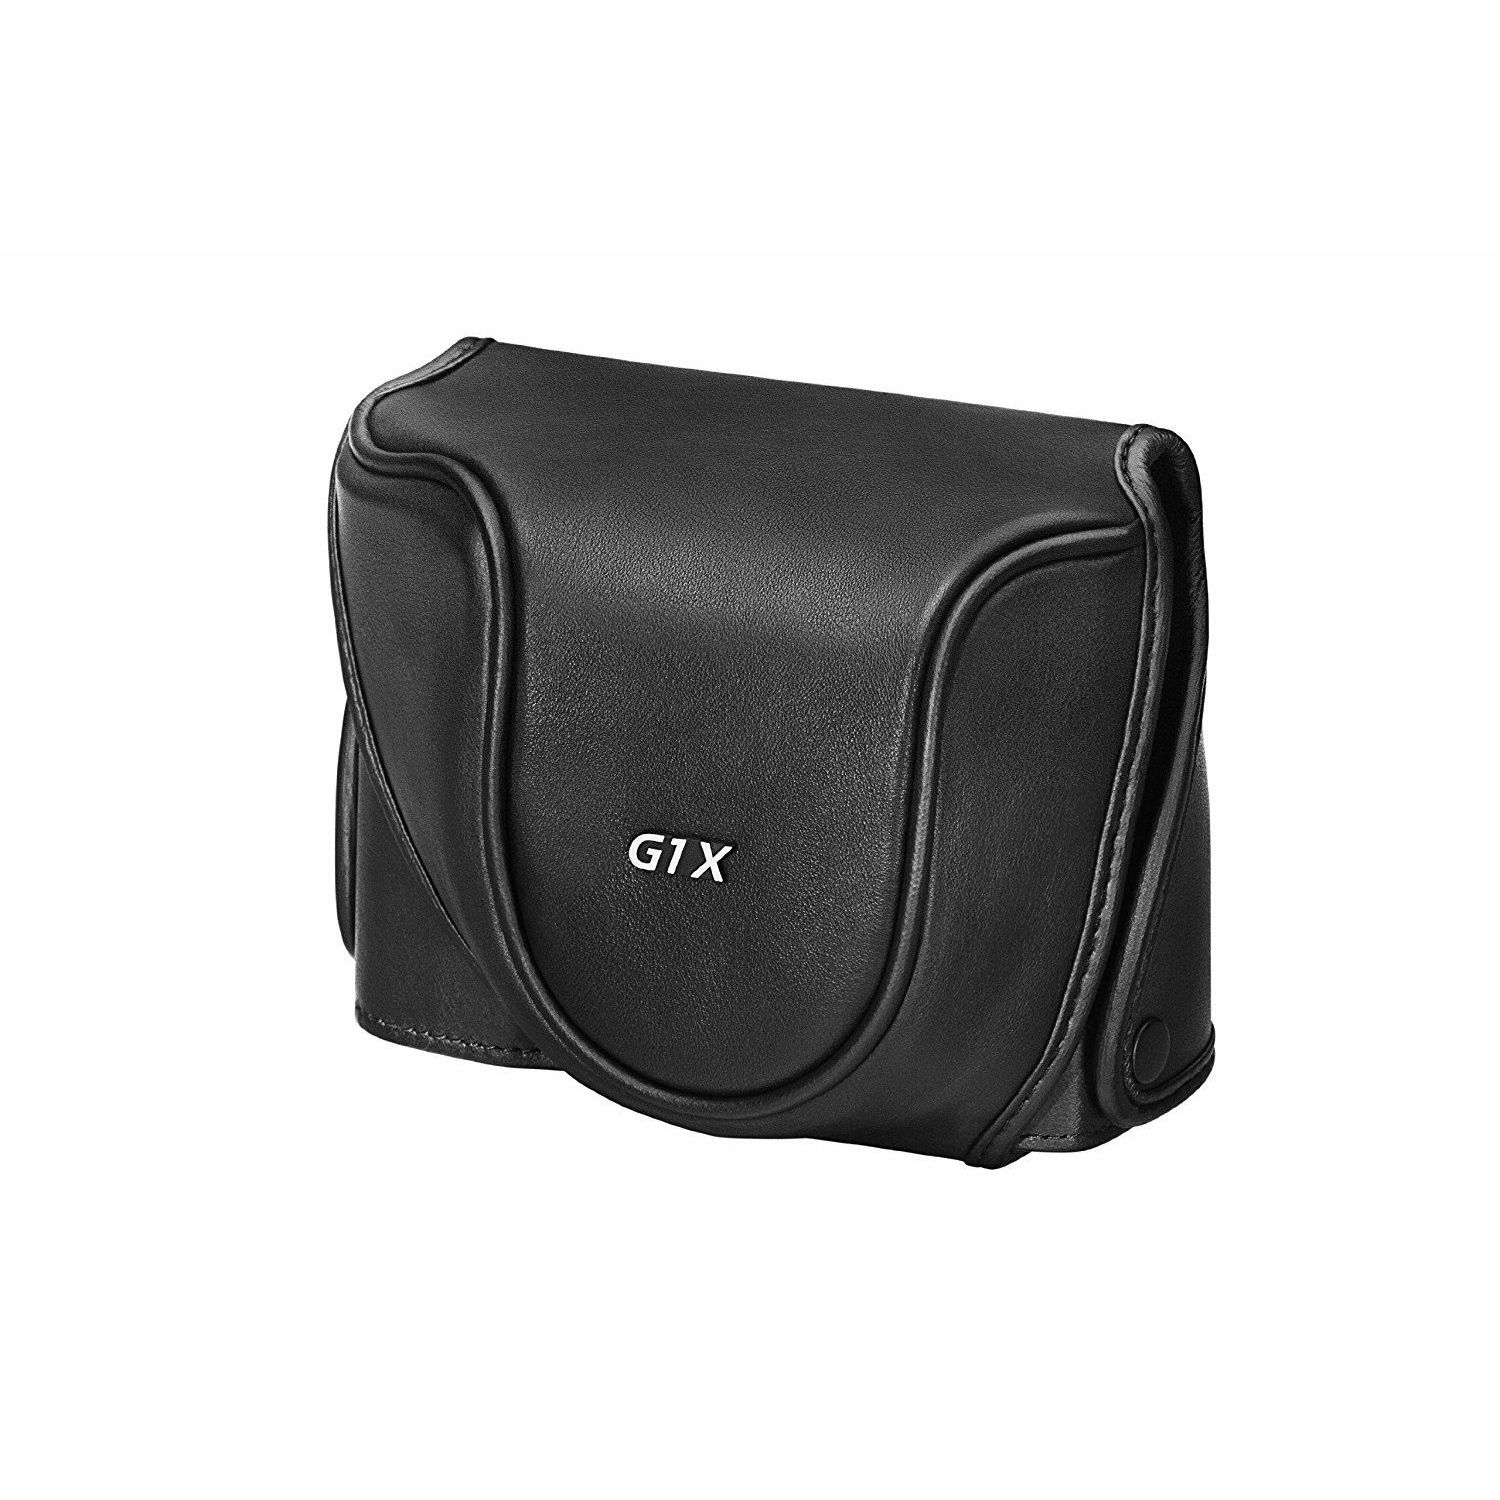 Canon Deluxe Soft Case DCC-1800 torbica za G1X digitalni fotoaparat (0036x207)